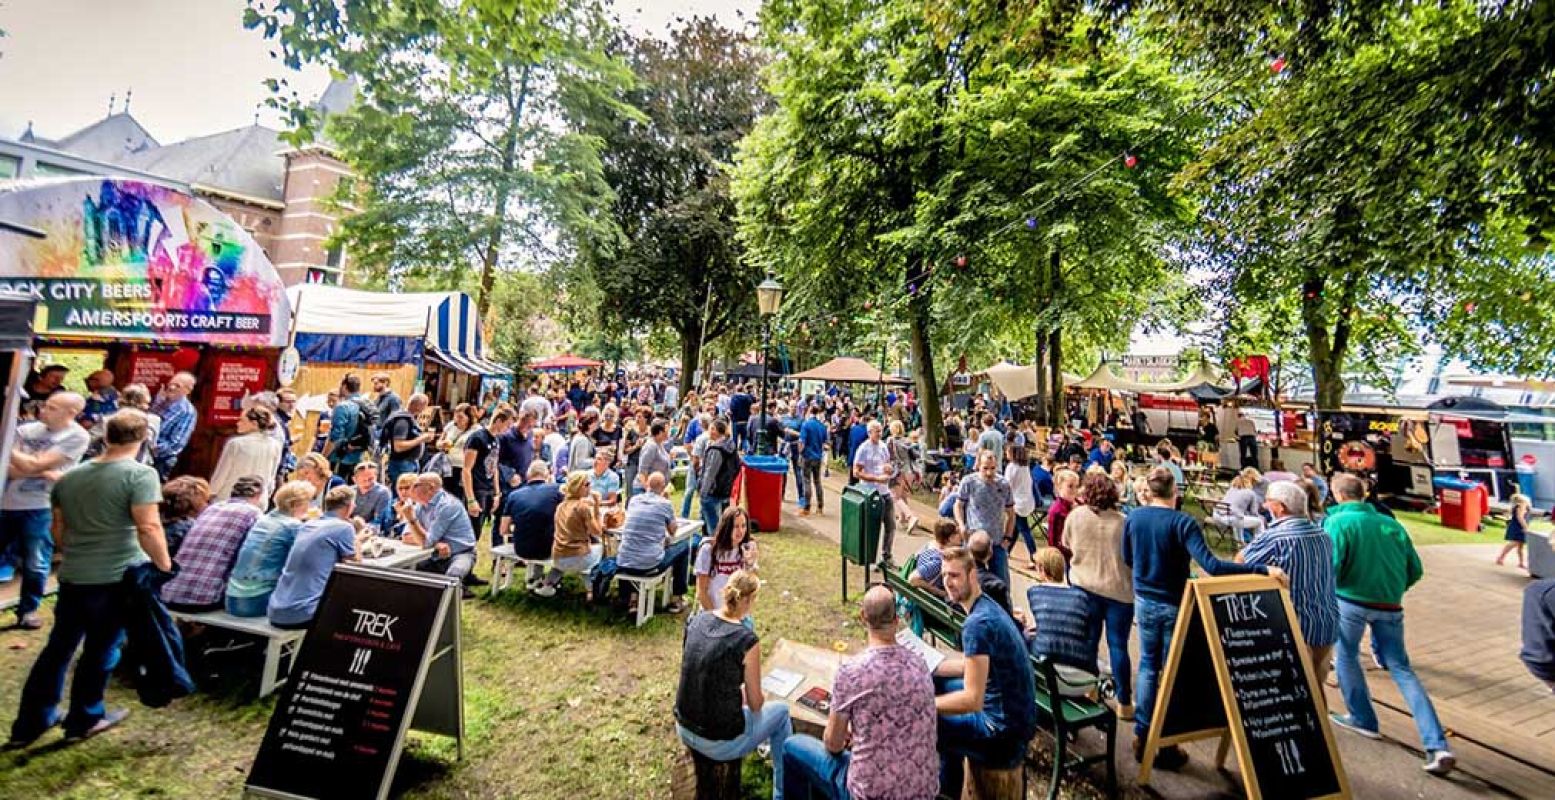 Wijntje, biertje, muziekje, hapje. Geniet van een heerlijk zomerfestival! Foto: Kannen & Kruiken © Dennis Verduin.